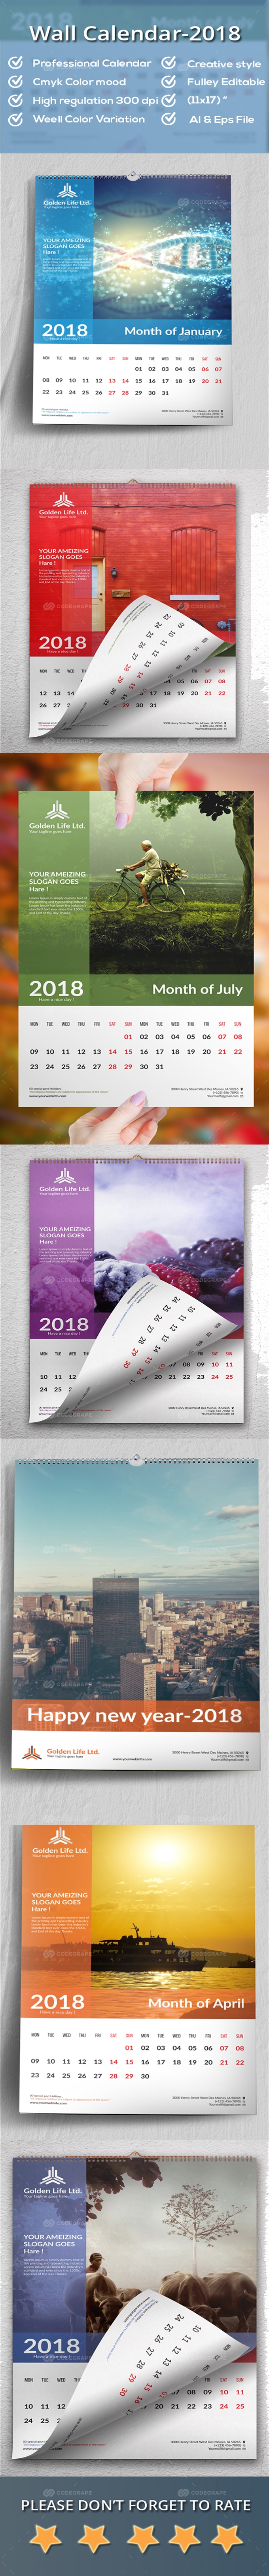 Wall Calendar 2018